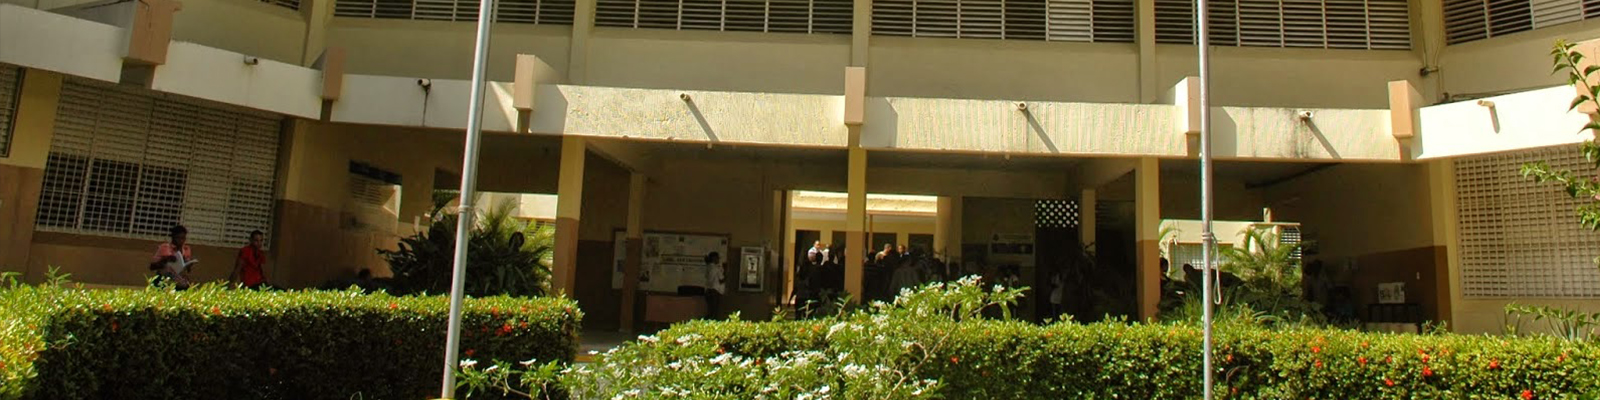 Recinto San Cristóbal – Universidad Autónoma de Santo Domingo (UASD)